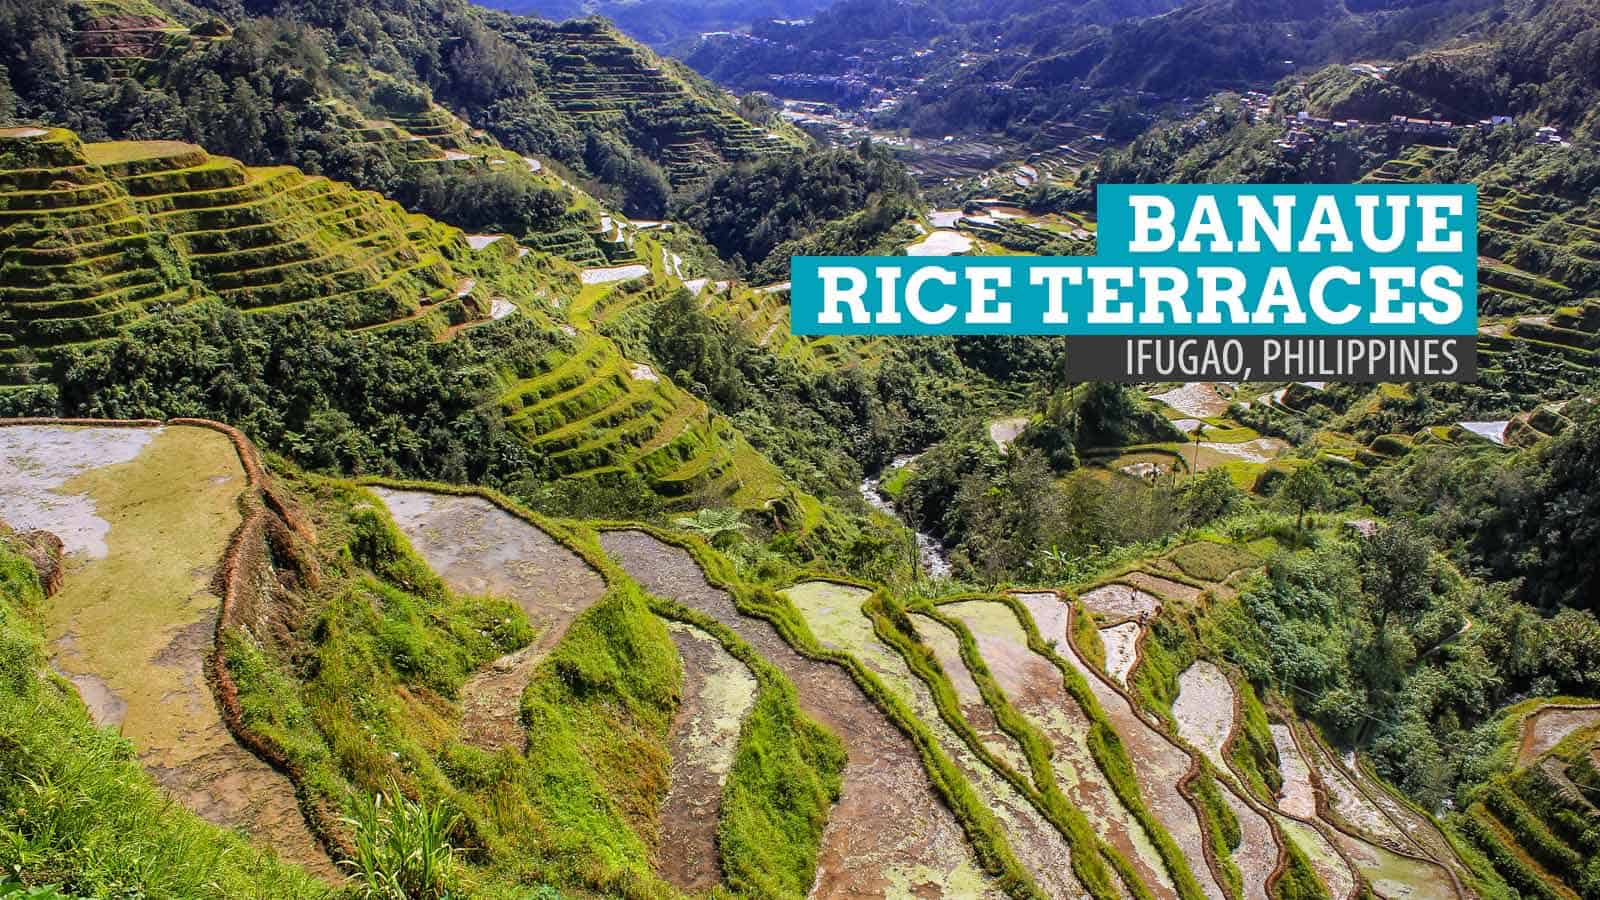 菲律宾伊富高的Banaue水稻梯田